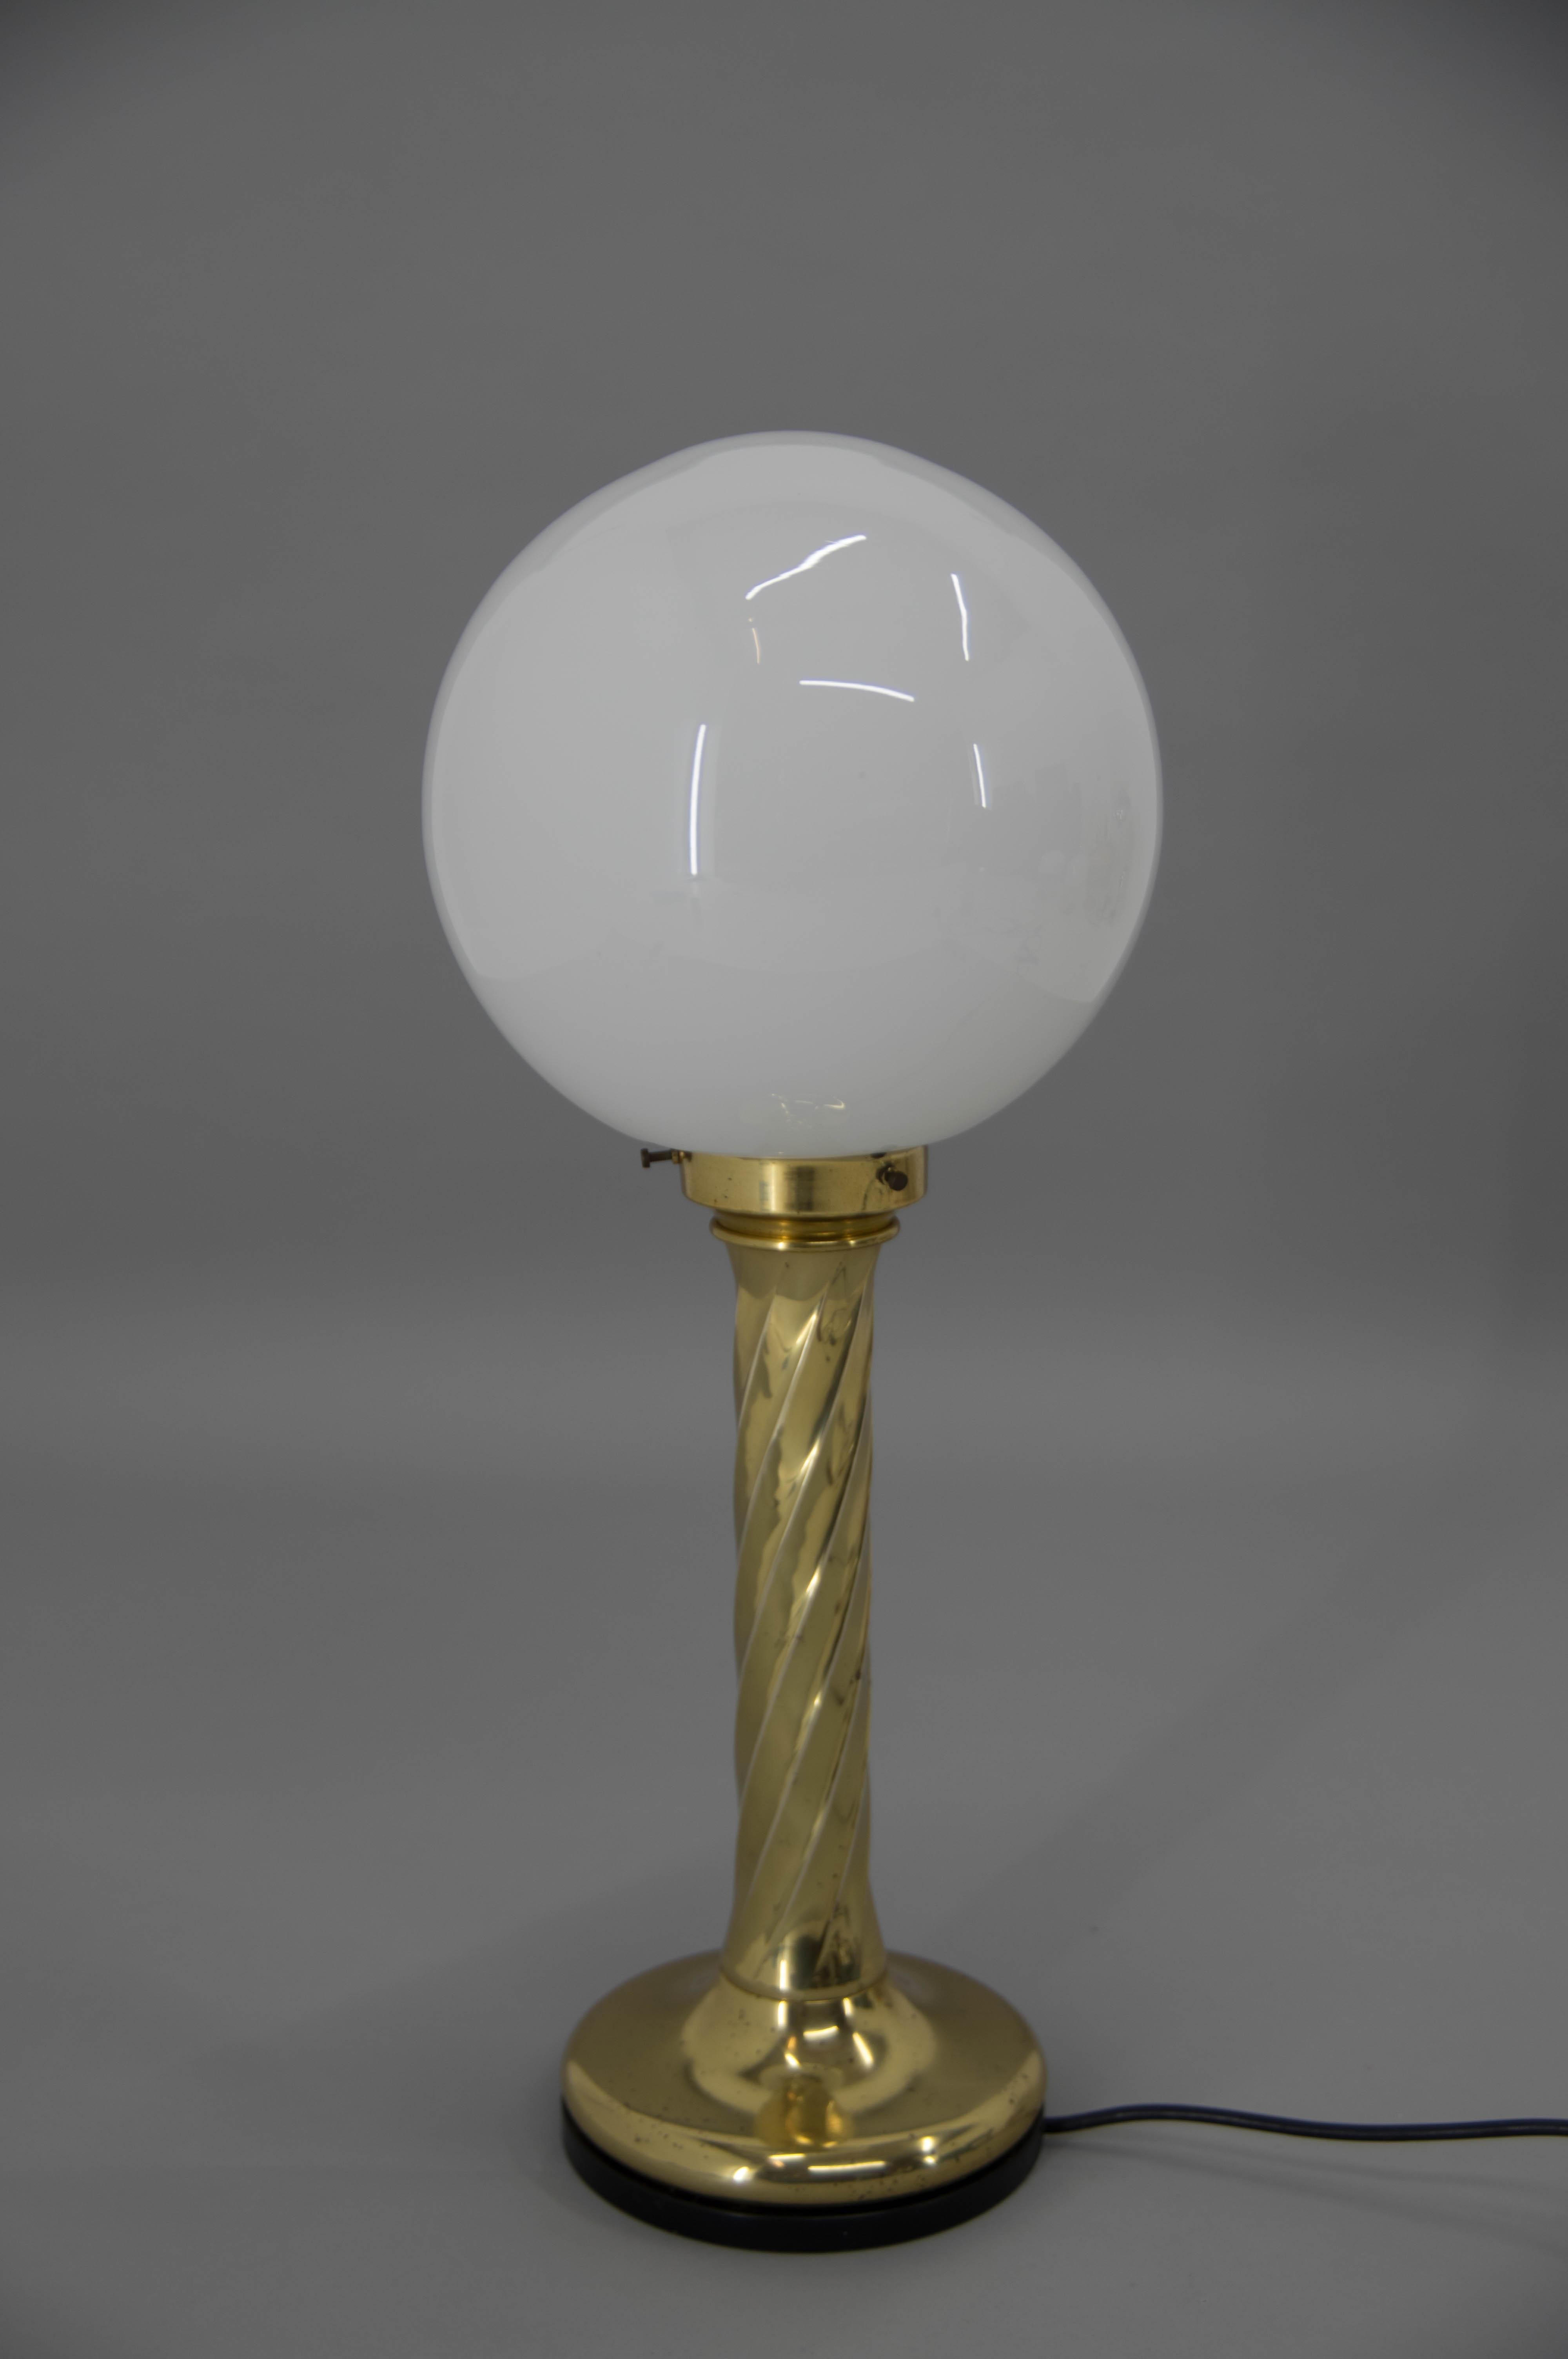 Cette lampe BIG (hauteur : 62cm, 24in) peut être utilisée comme lampadaire ou lampe de table.
Il a une base en laiton et un abat-jour en verre opalin.
Belle patine d'âge sur le laiton.
1x60W, ampoule E25-E27
Adaptateur pour prise américaine